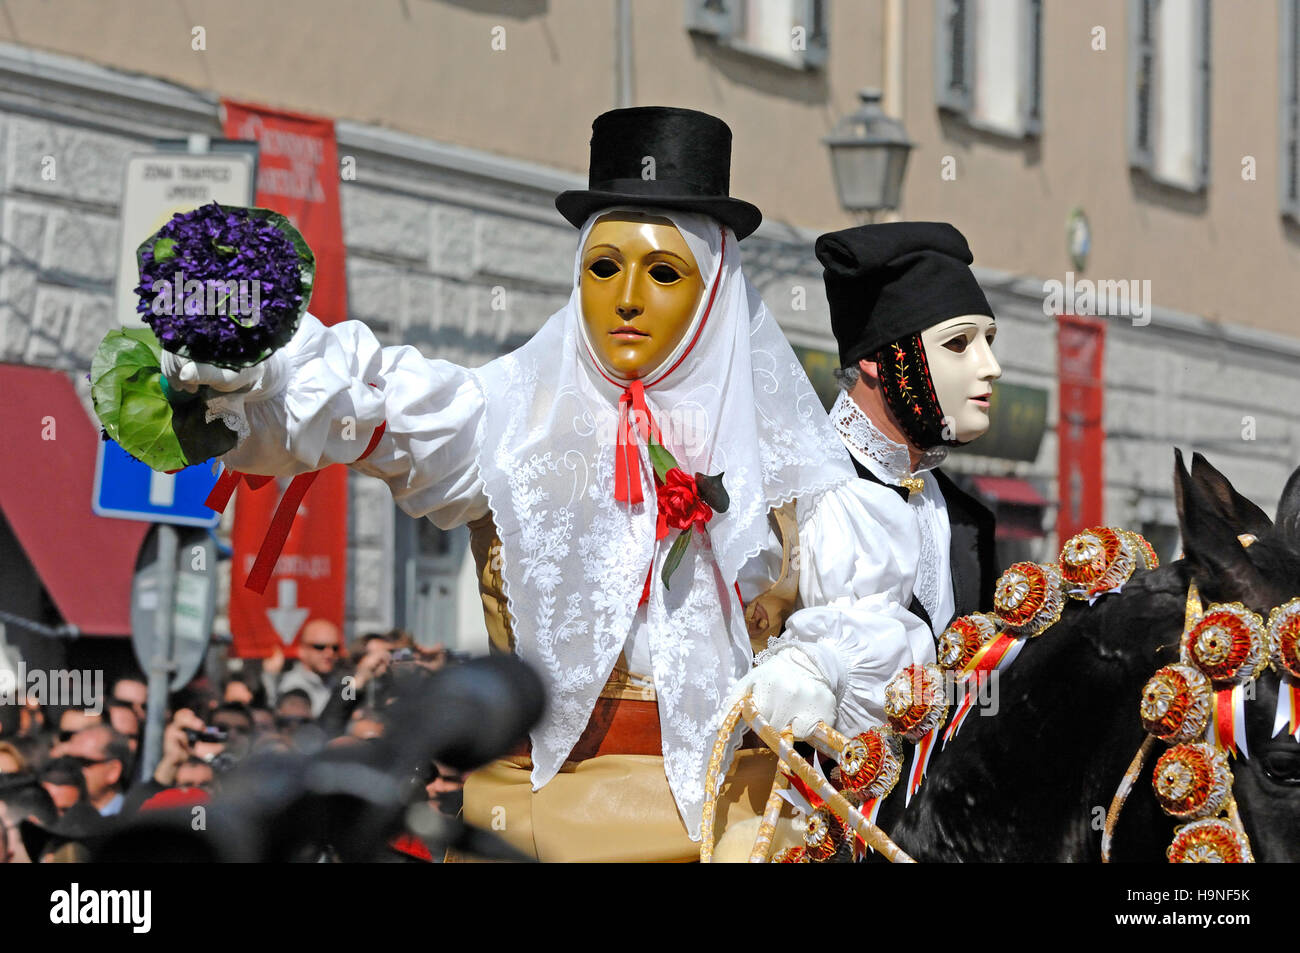 Une procession componidori marque le début du tournoi, Sartiglia fête, Oristano, Sardaigne, Italie, Europe Banque D'Images